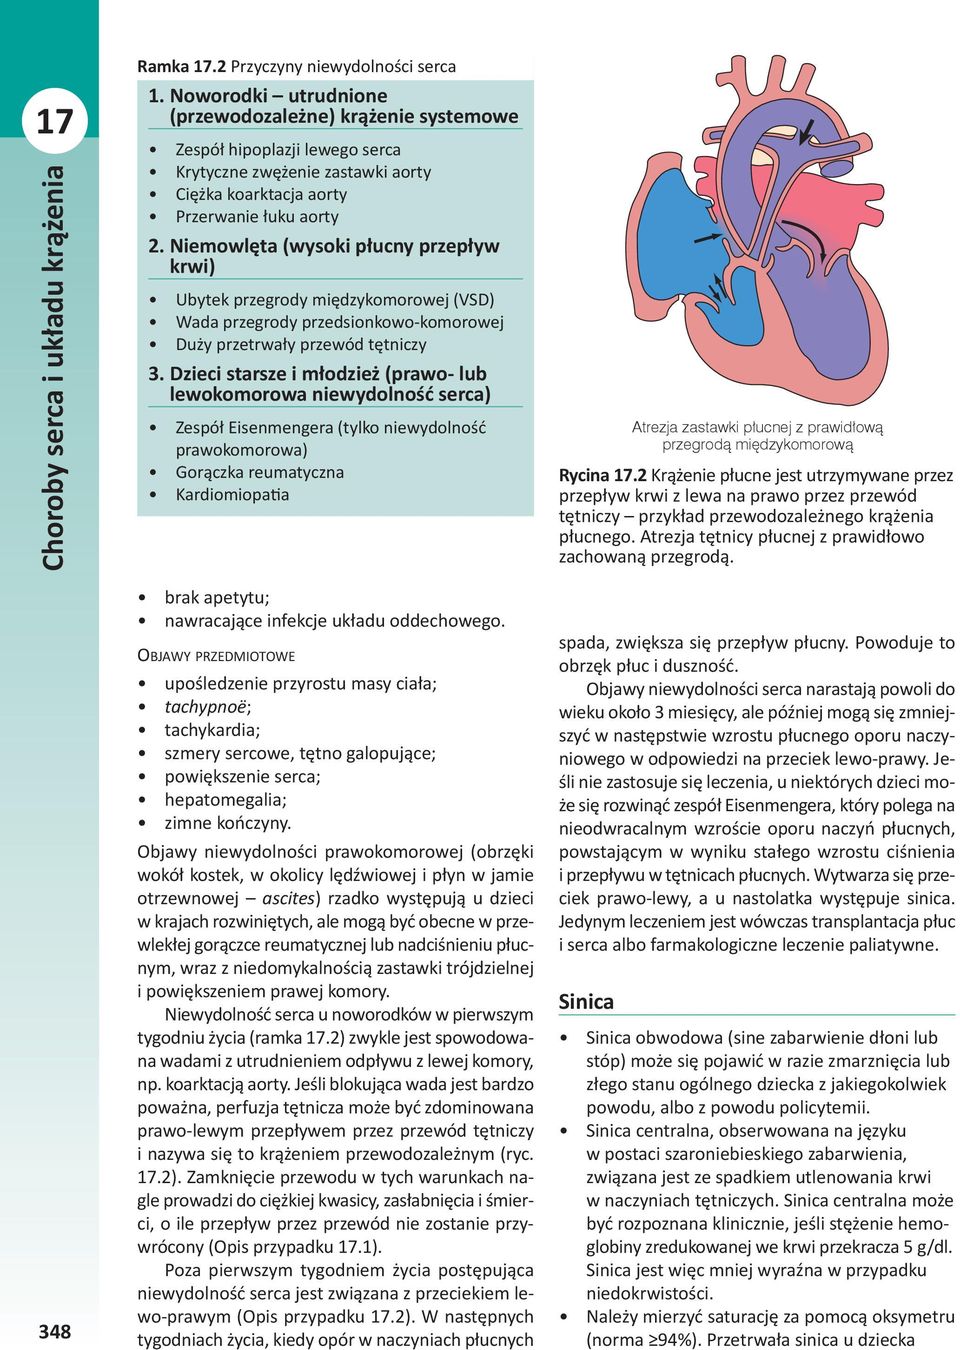 Niemowlęta (wysoki płucny przepływ krwi) Ubytek przegrody międzykomorowej (VSD) Wada przegrody przedsionkowo-komorowej Duży przetrwały przewód tętniczy 3.